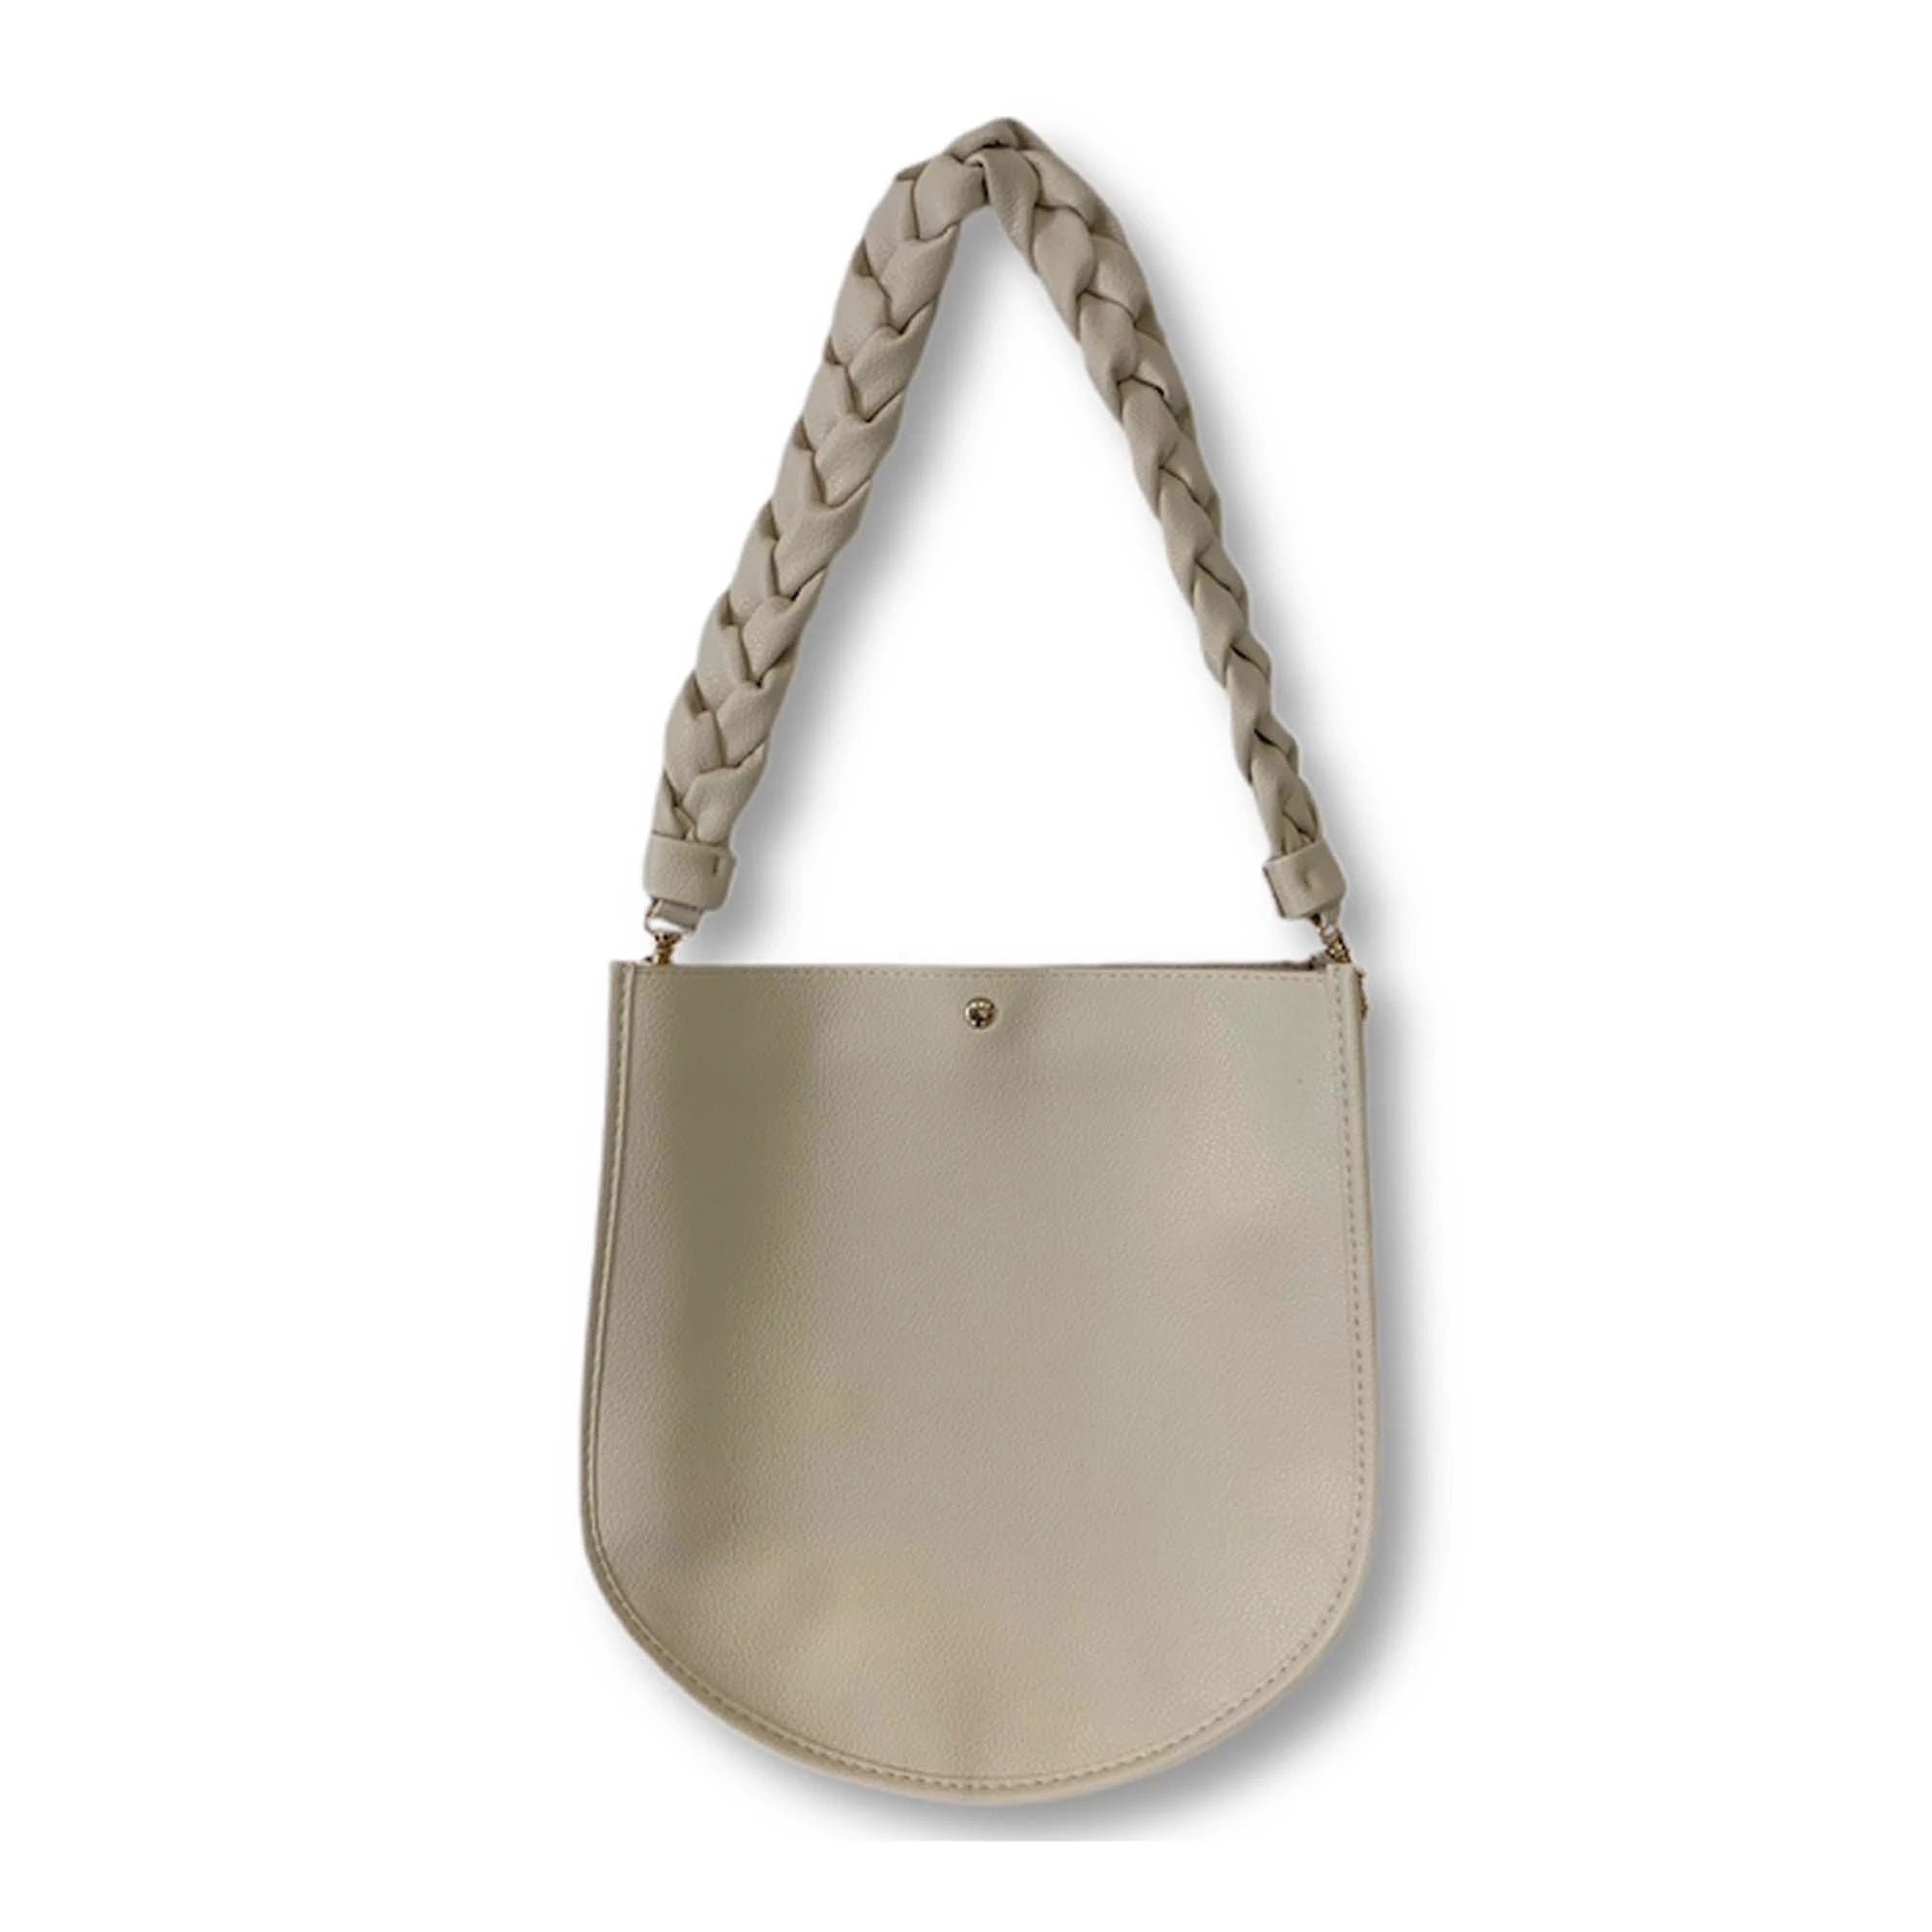 Silver Daisy Rhinestone Puffy Tassel Key Chain Purse Charm Handbag Accessory